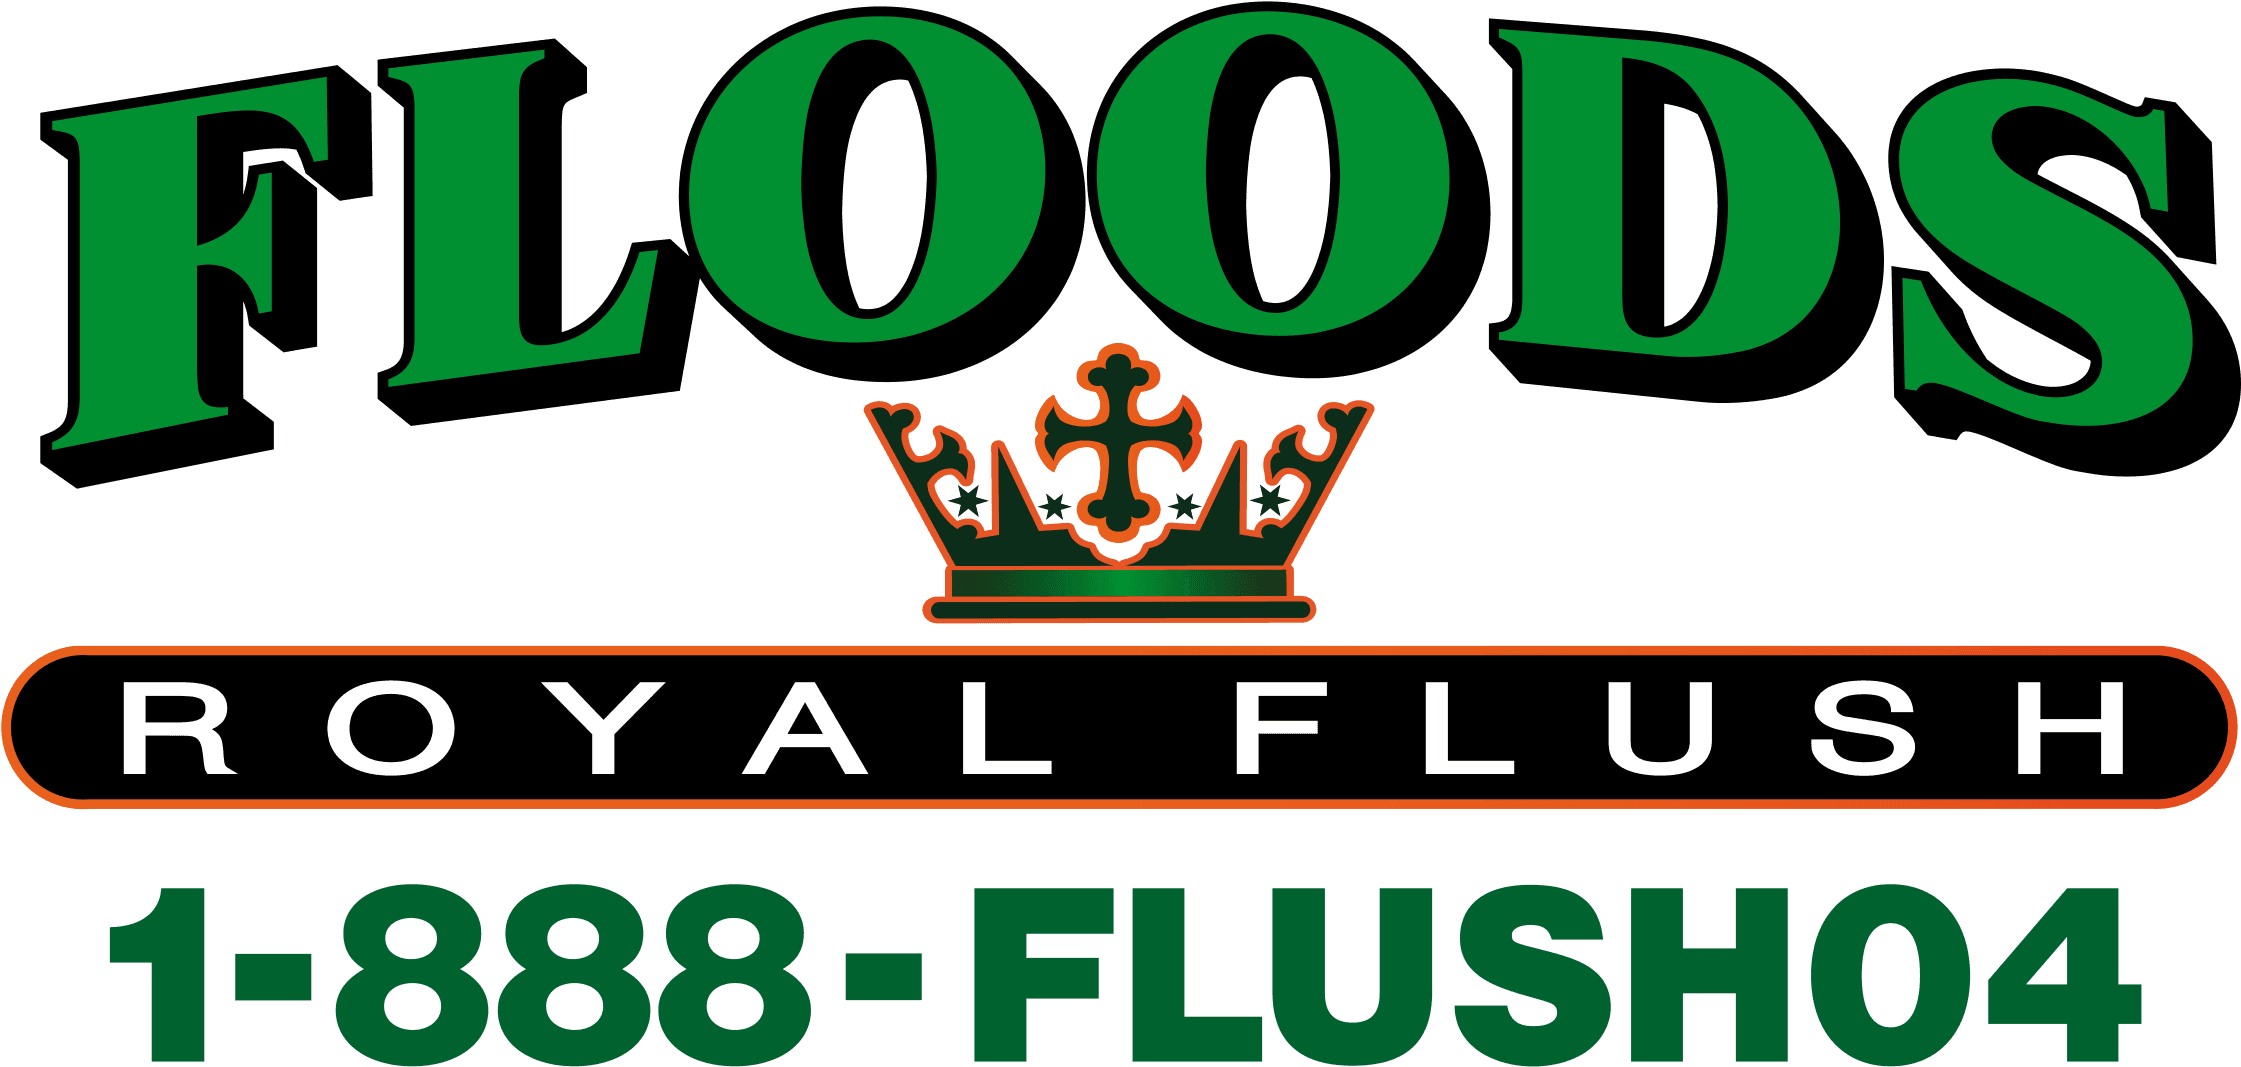 Floods Royal Flush, Hd Png Download